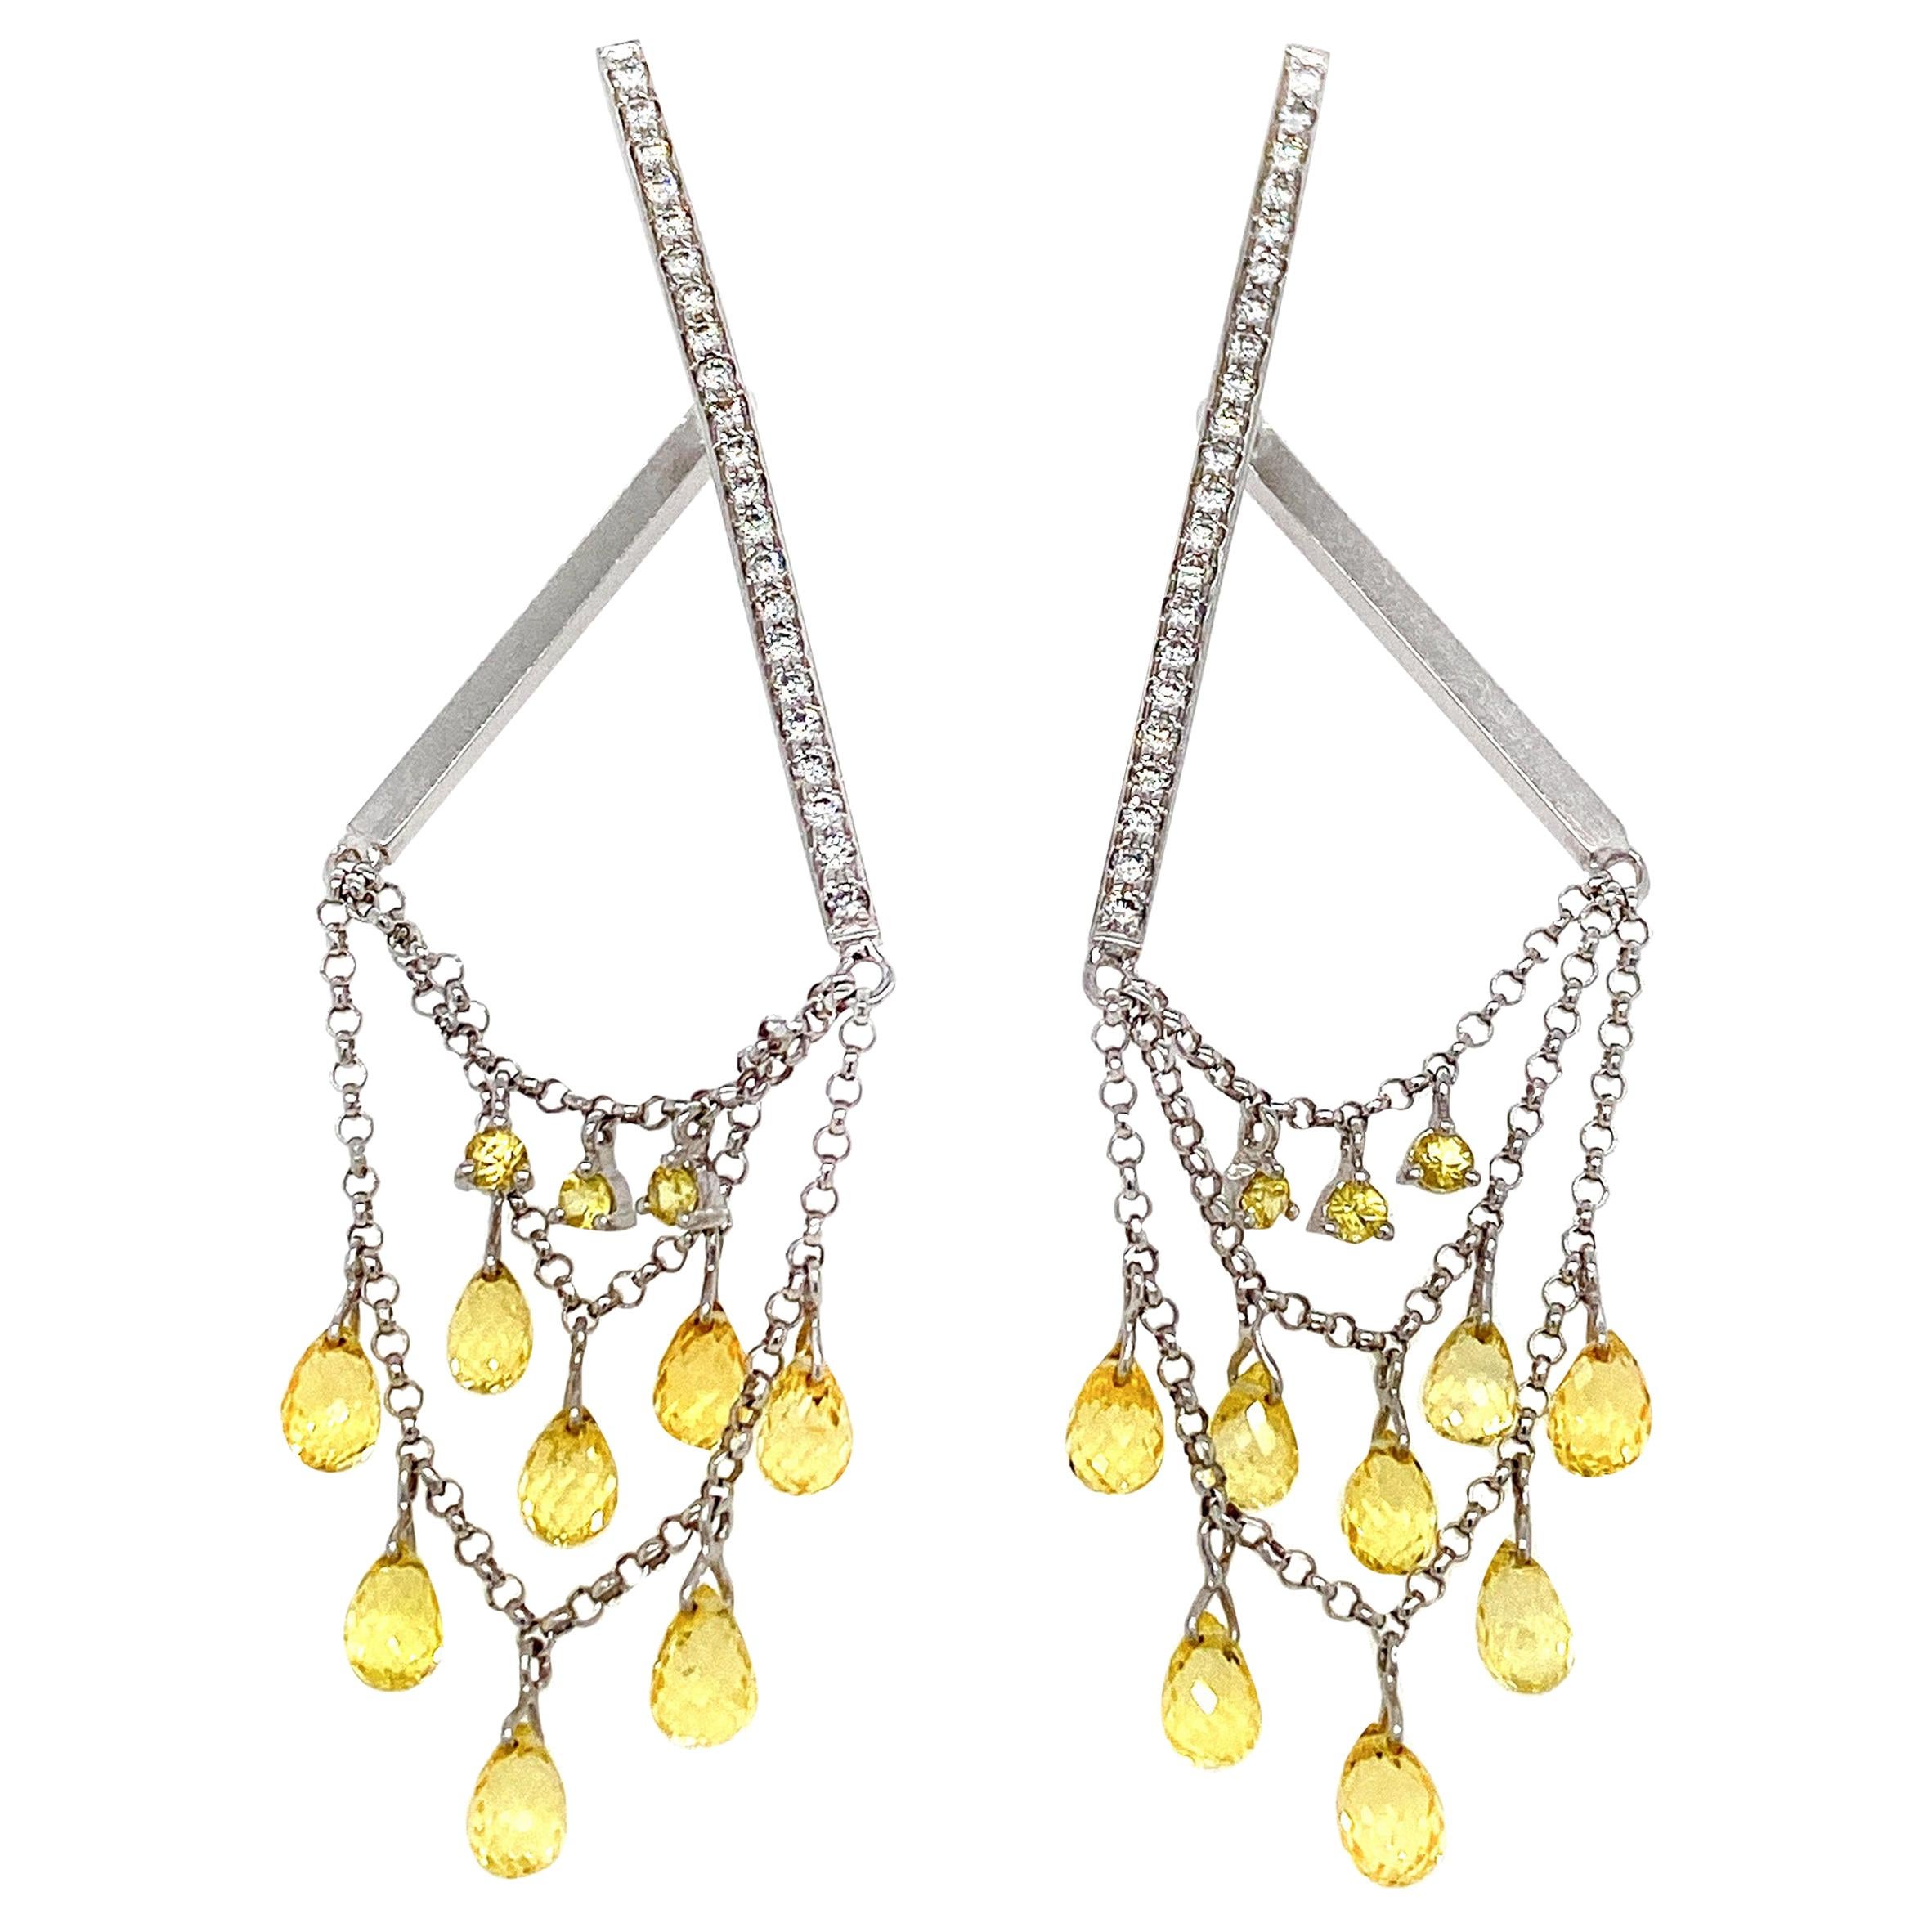 Briolette Fancy Sapphire and Diamond Drop Earrings in 18 Karat Gold